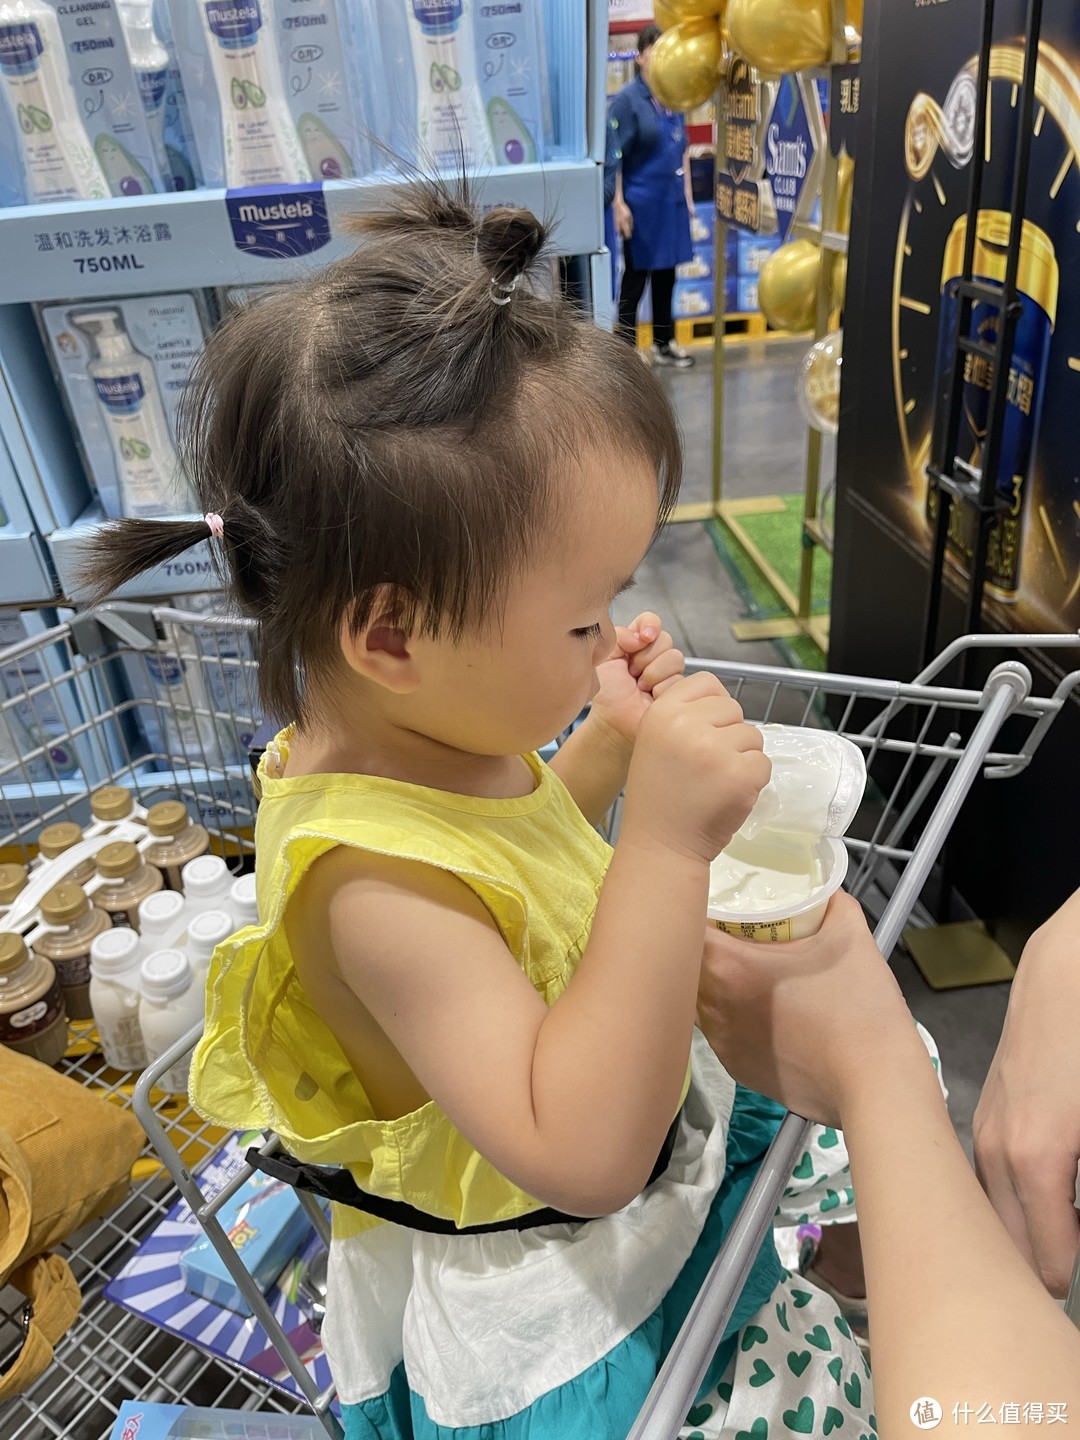 小孩子是不会骗人的，在超市里就哭着要喝，这酸奶好喝都说累了（已和工作人员沟通才开盖，并买单了哈）